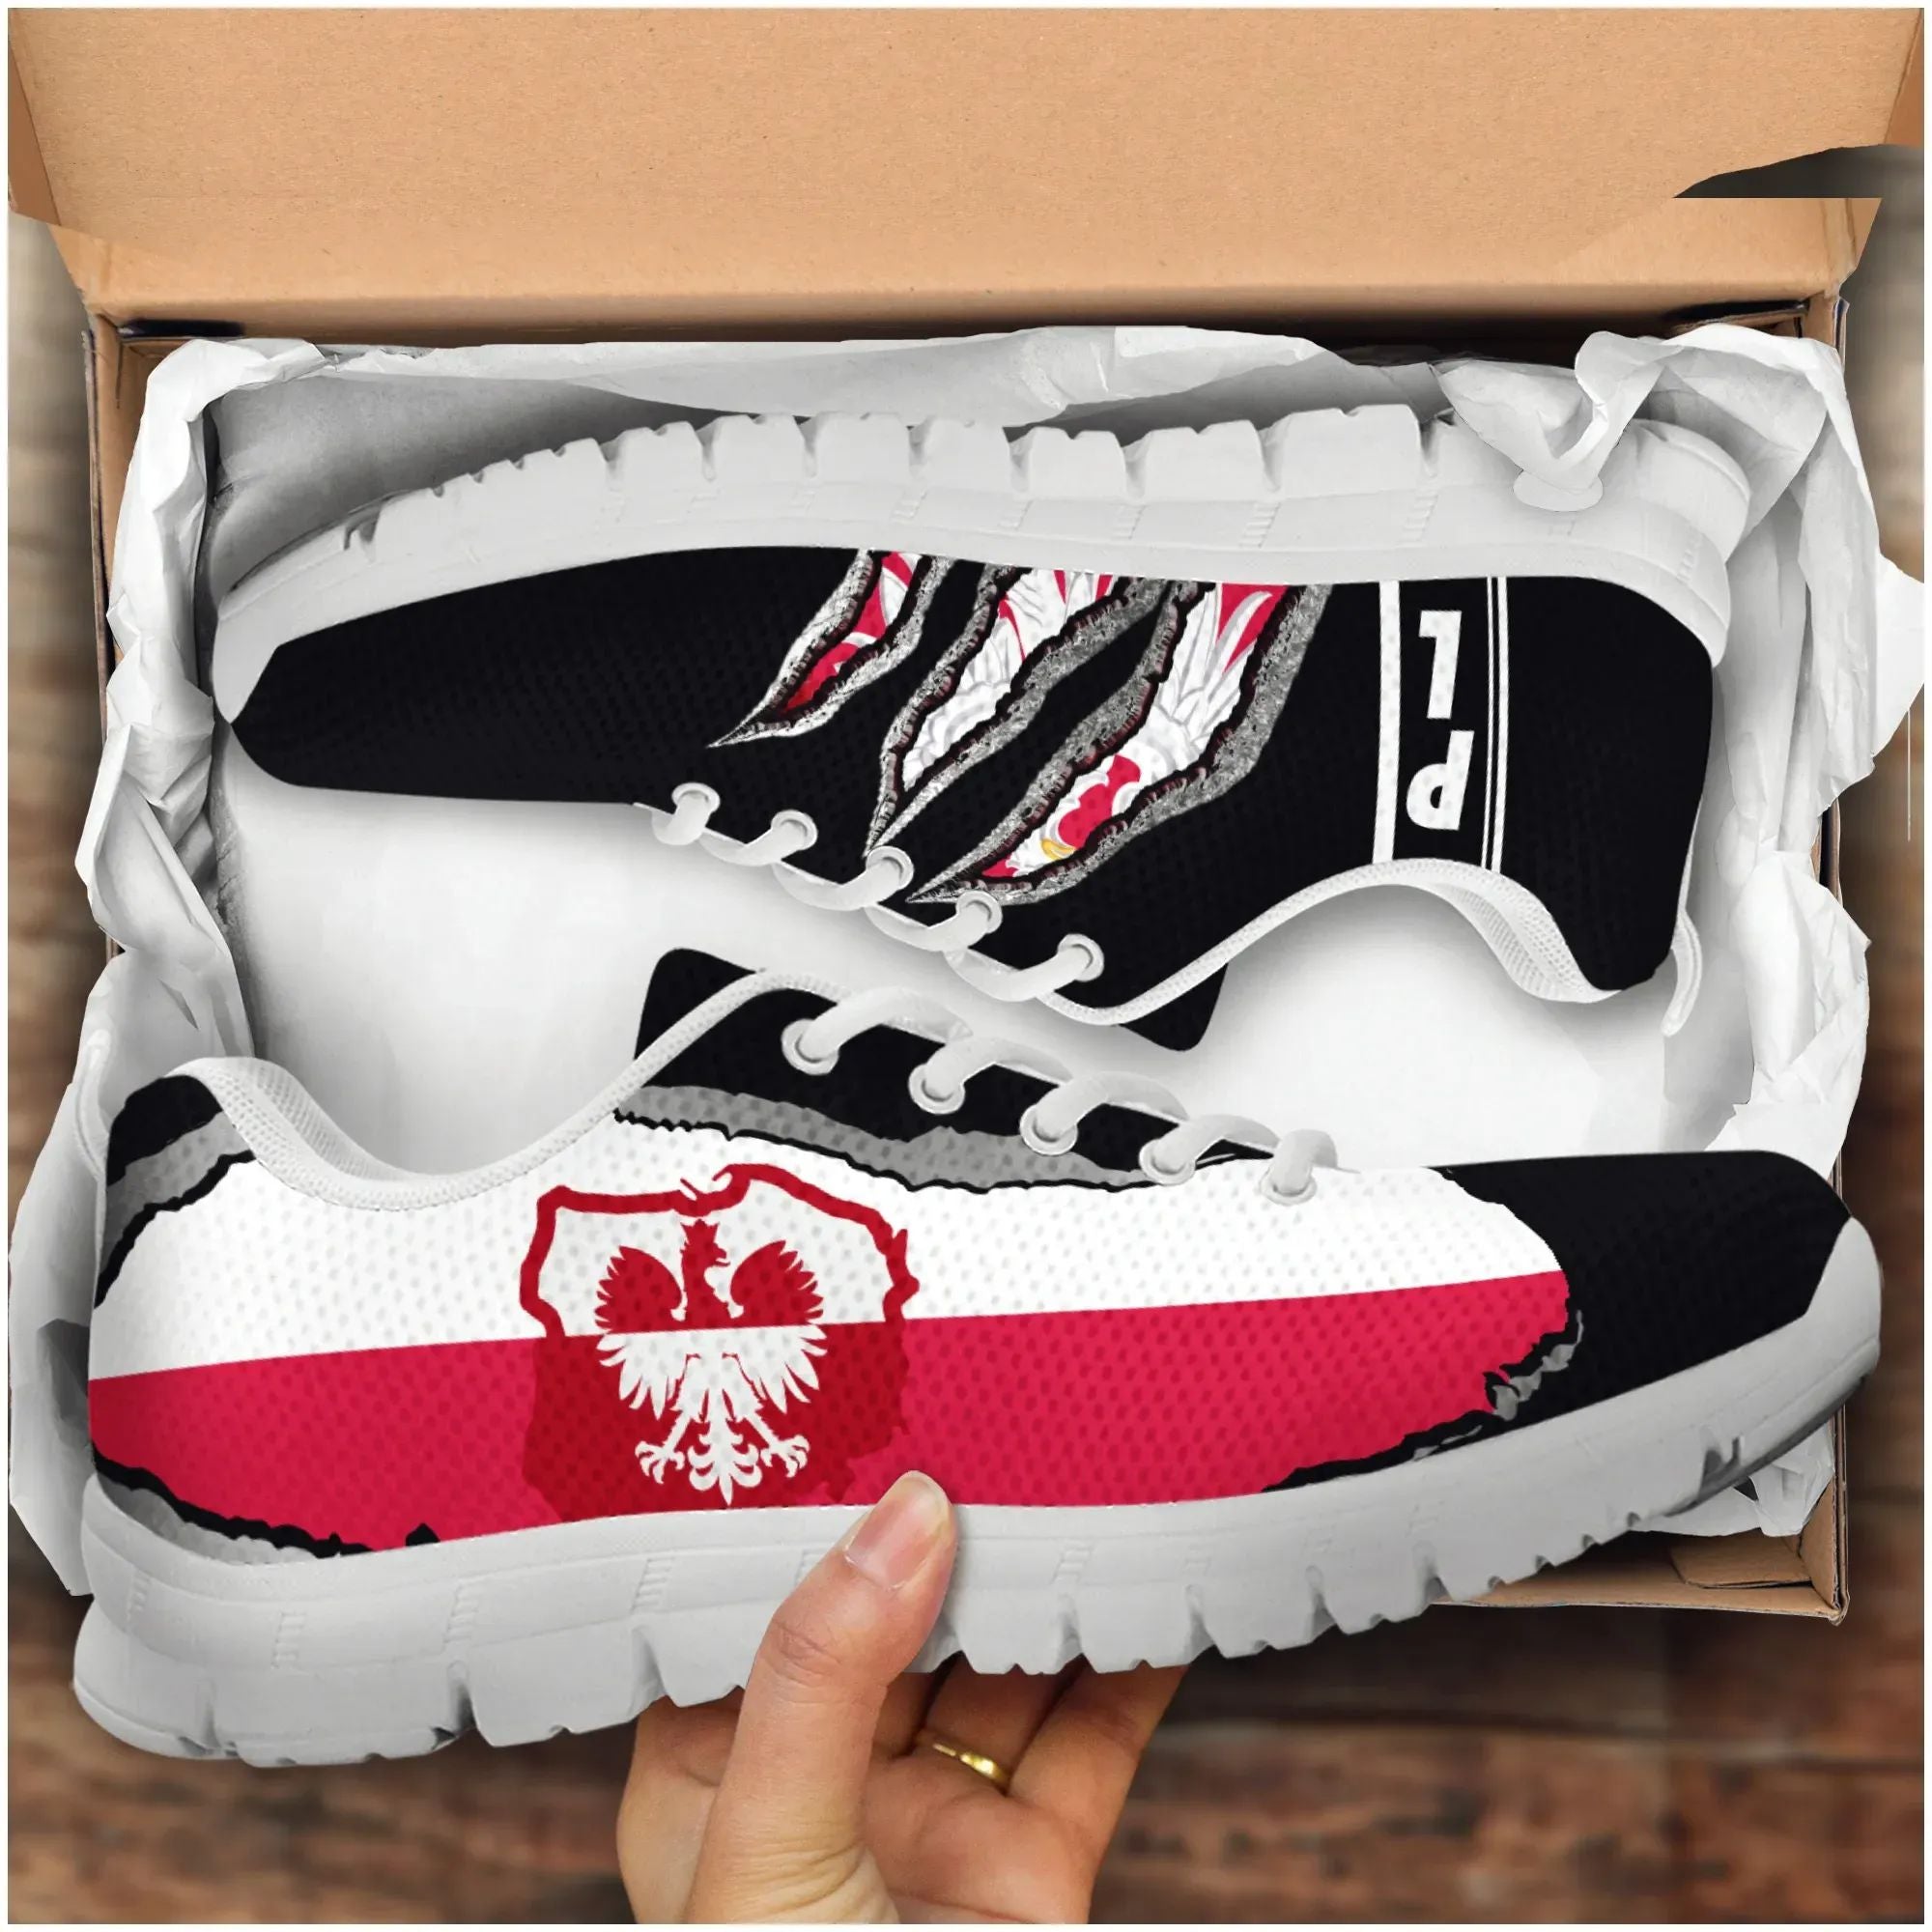 polska-poland-sneakers-adamantium-with-flag